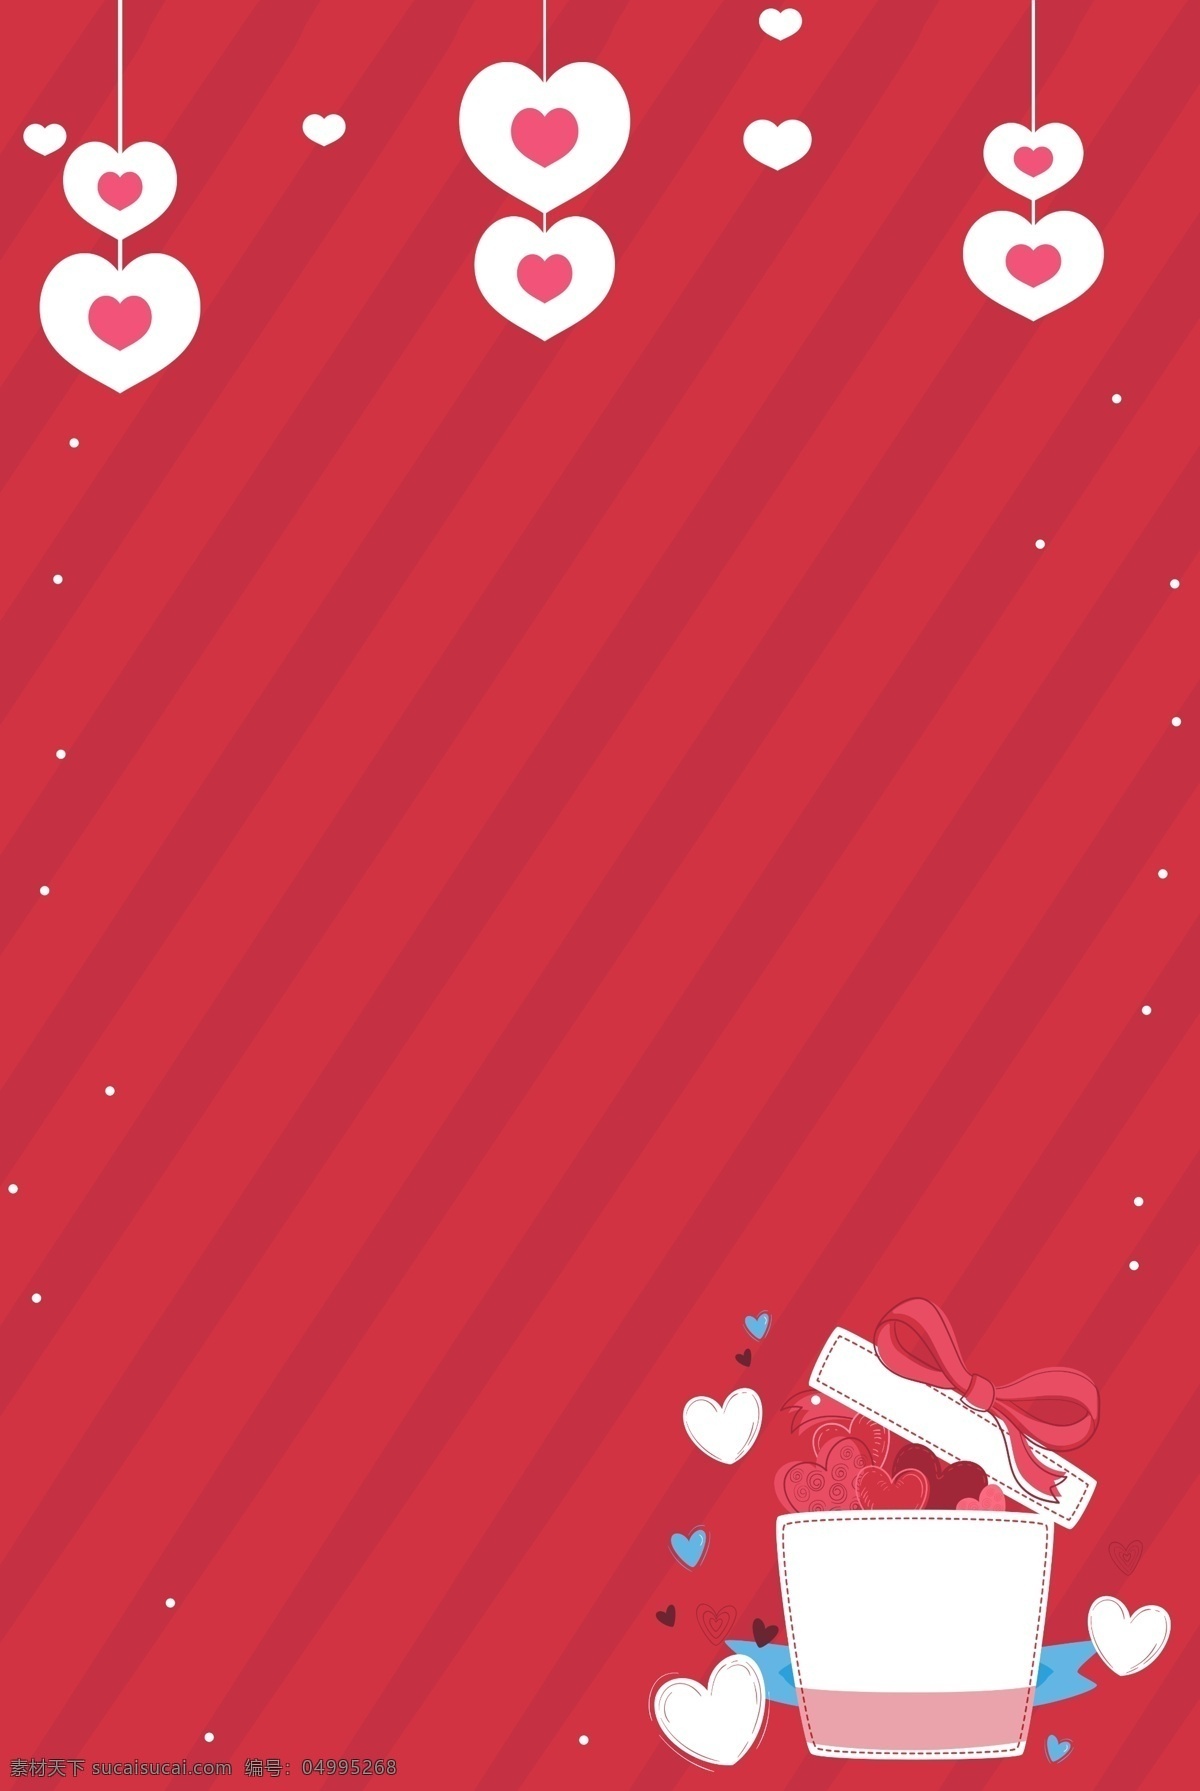 浪漫 心形 礼盒 情人节 海报 背景 图 情人节礼物 爱情 甜蜜 情人节背景